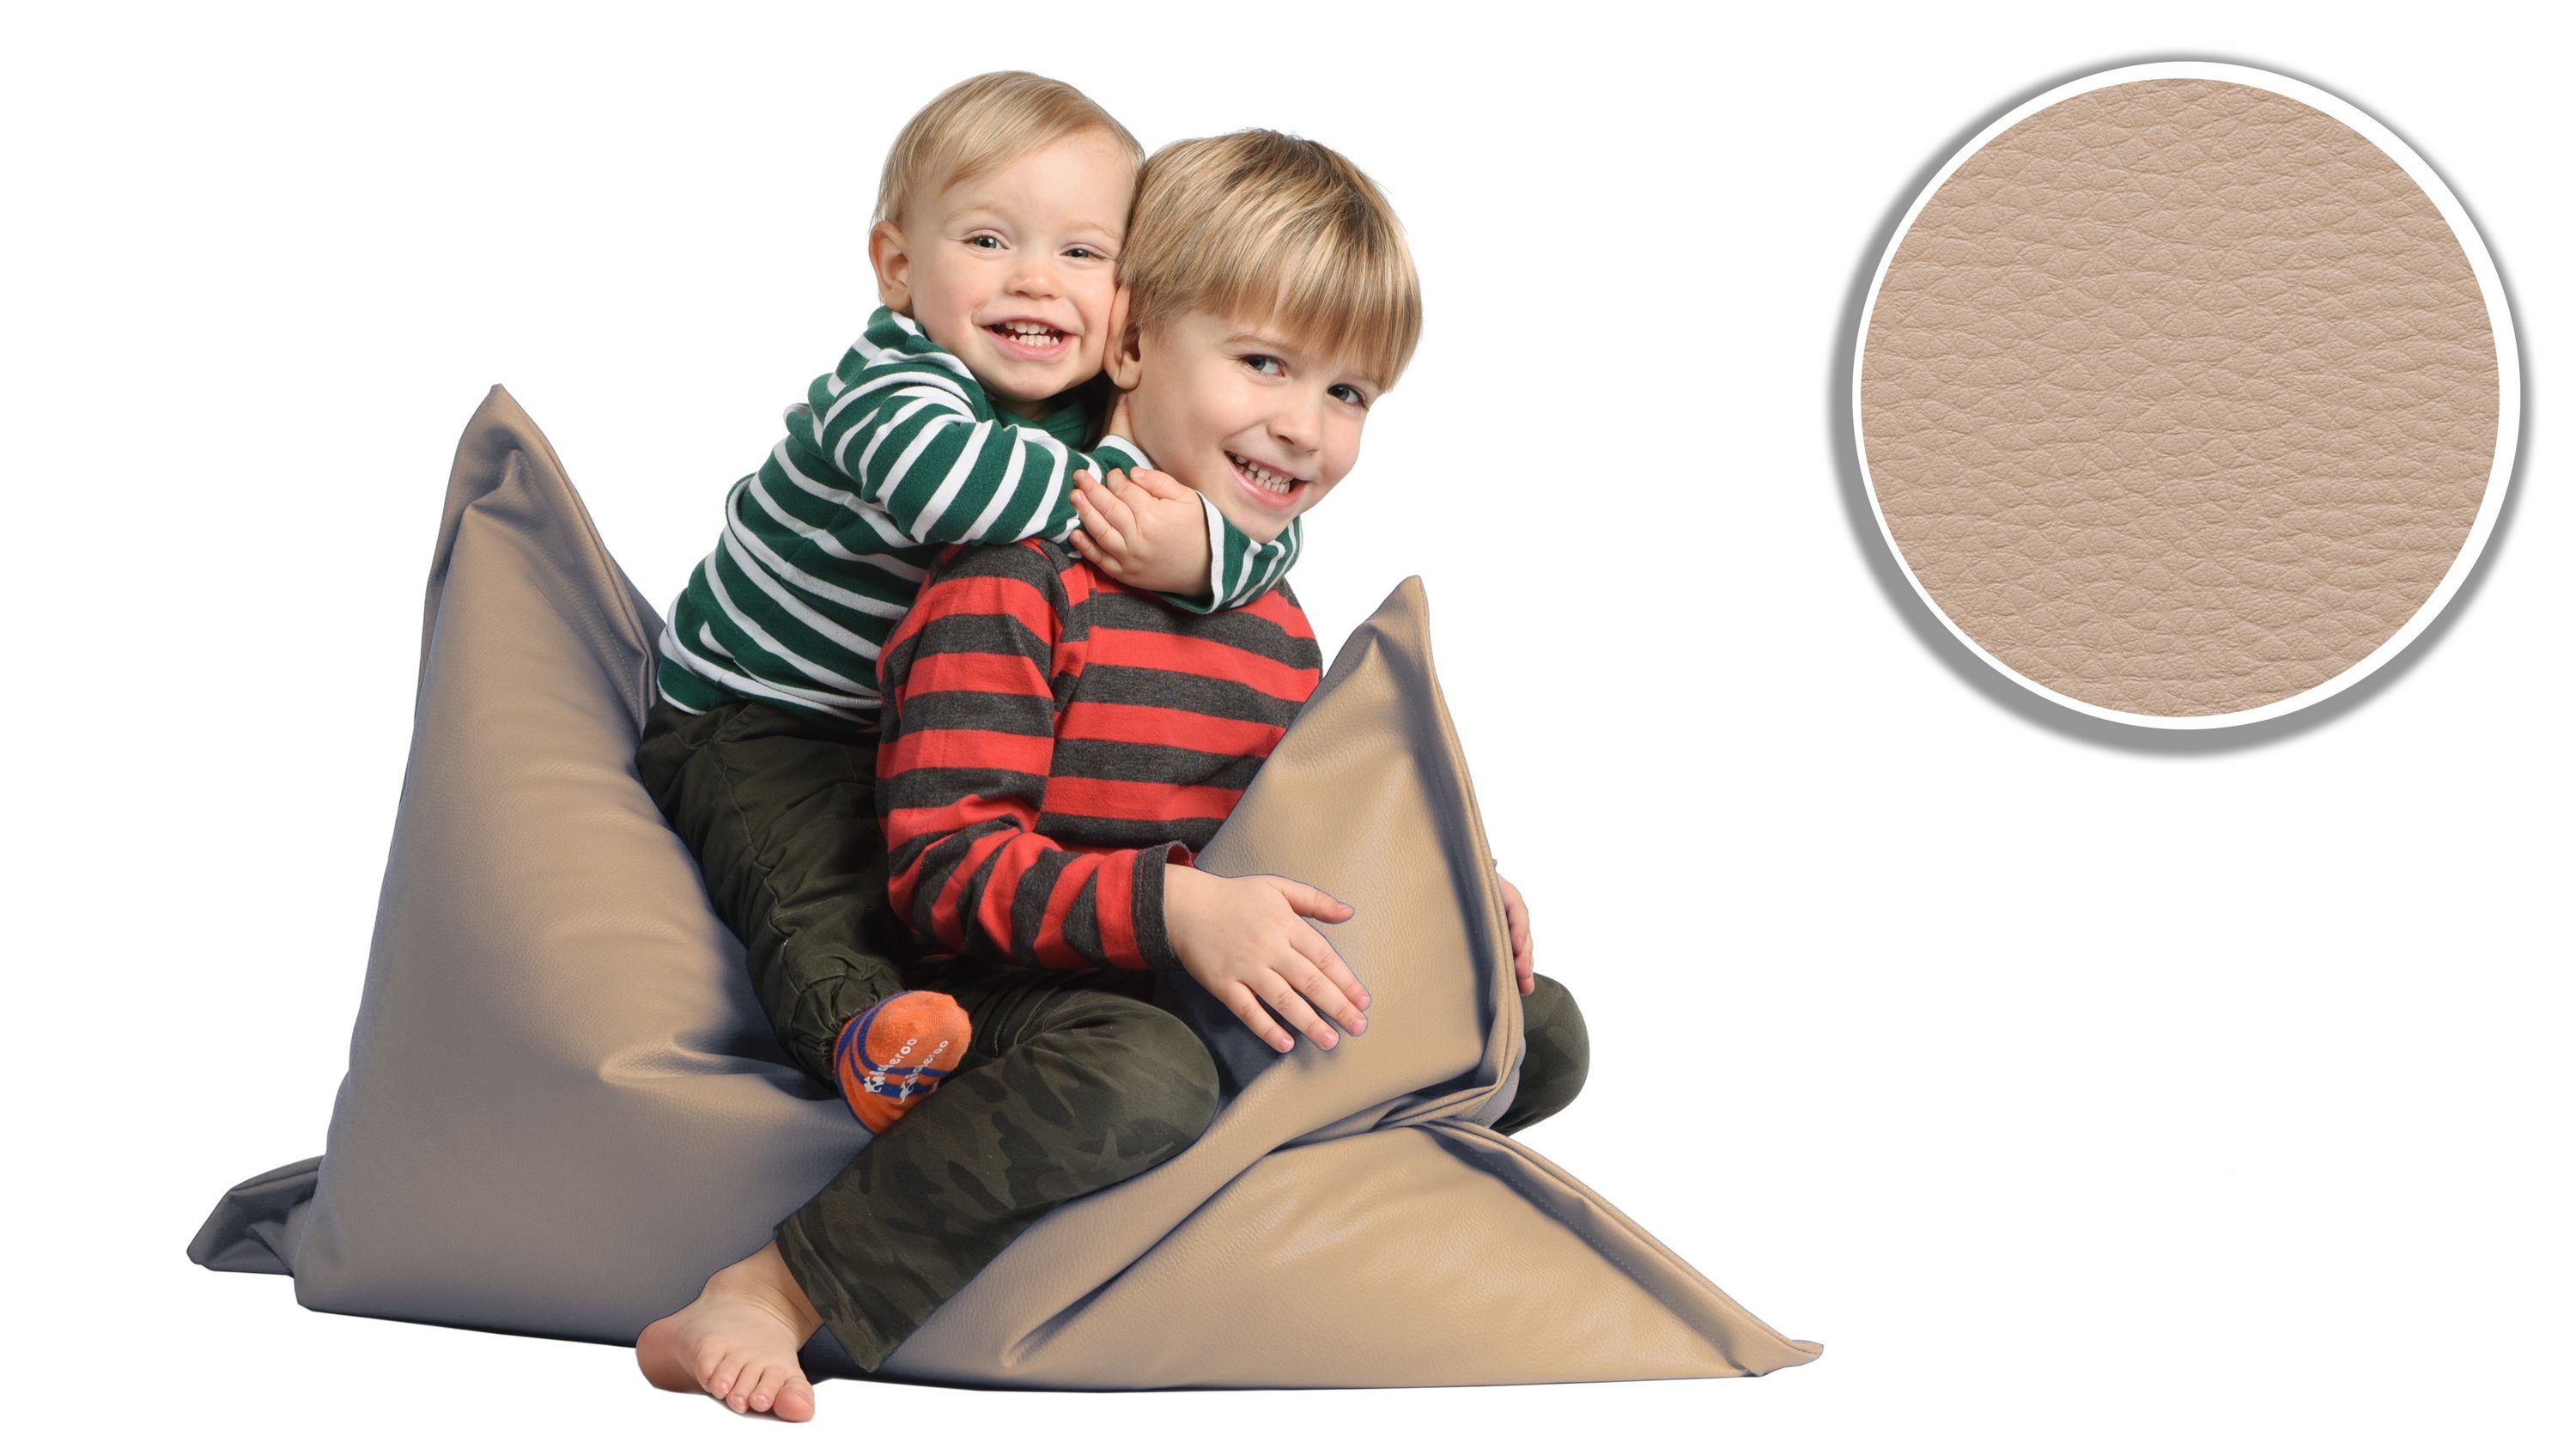 & cm Füllung Styropor Kinder Kunstleder sunnypillow x 100 Outdoor Indoor & Sitzsack für Erwachsene, aus 60L 70 mit